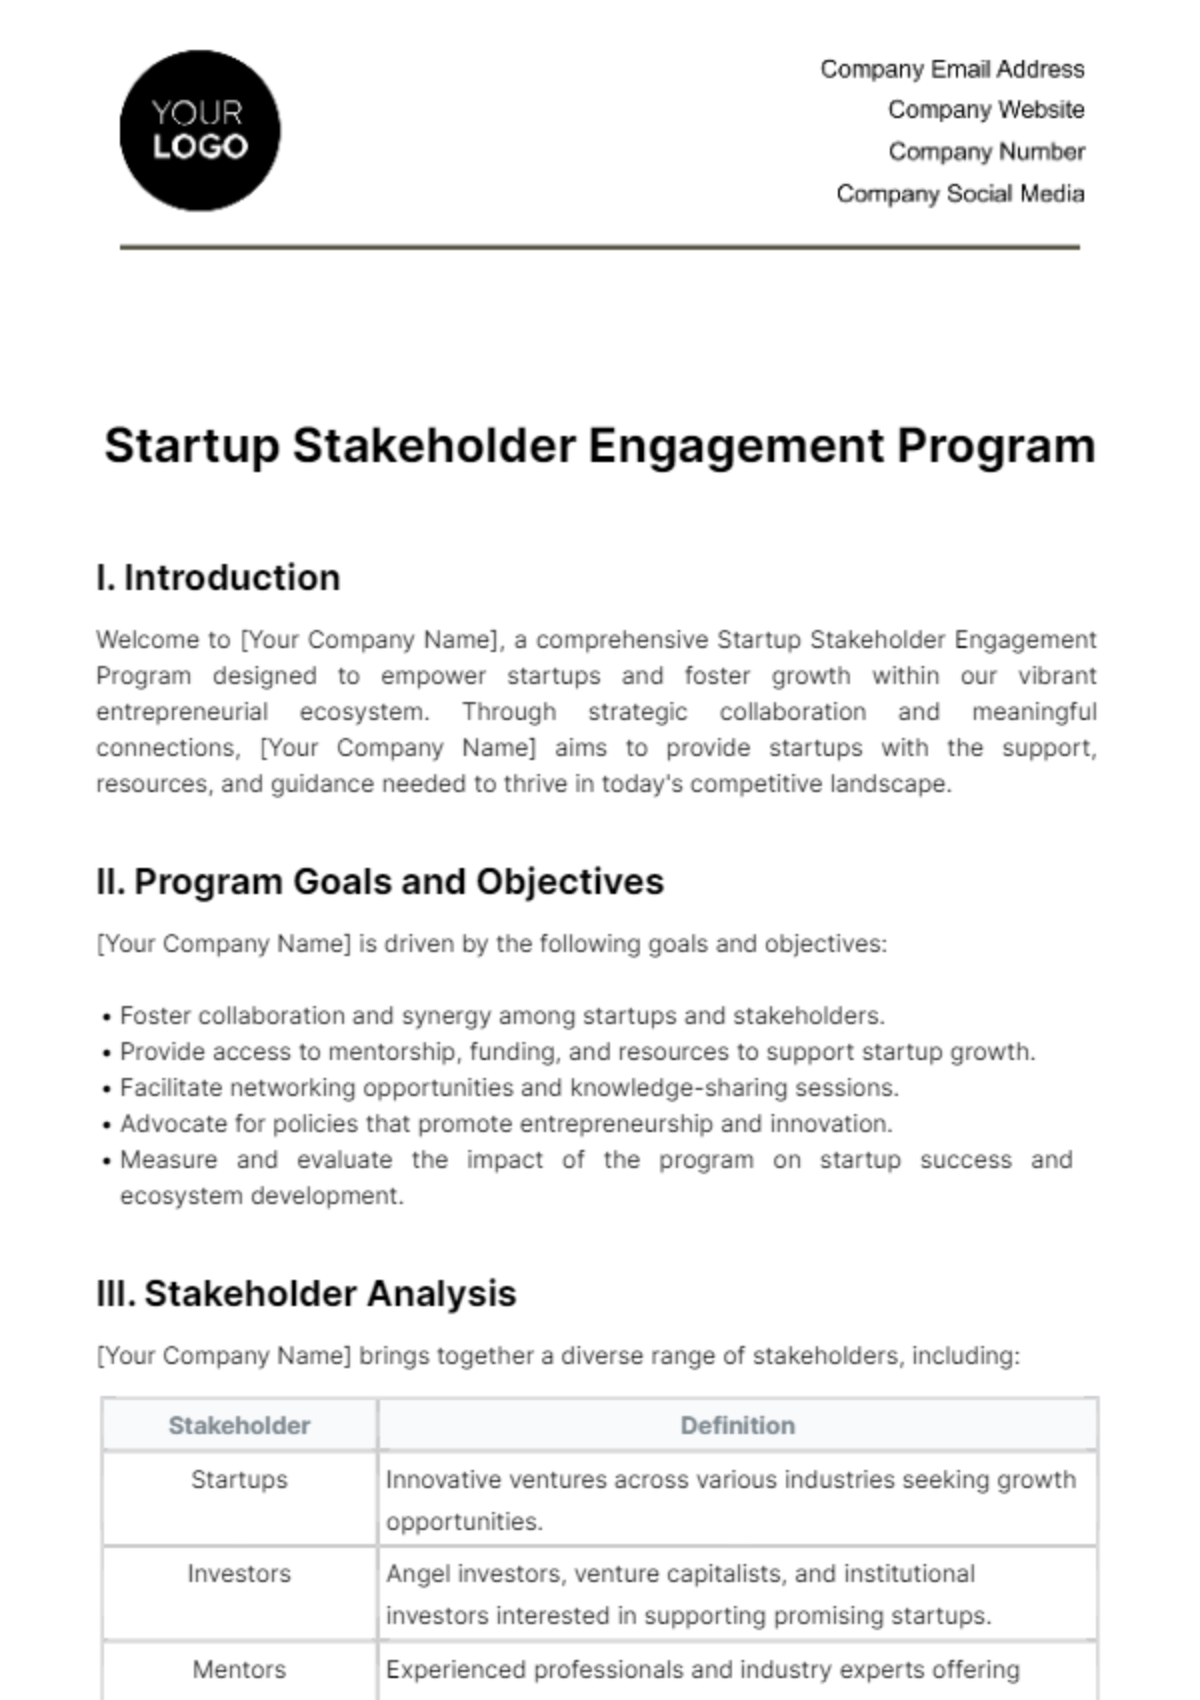 Startup Stakeholder Engagement Program Template